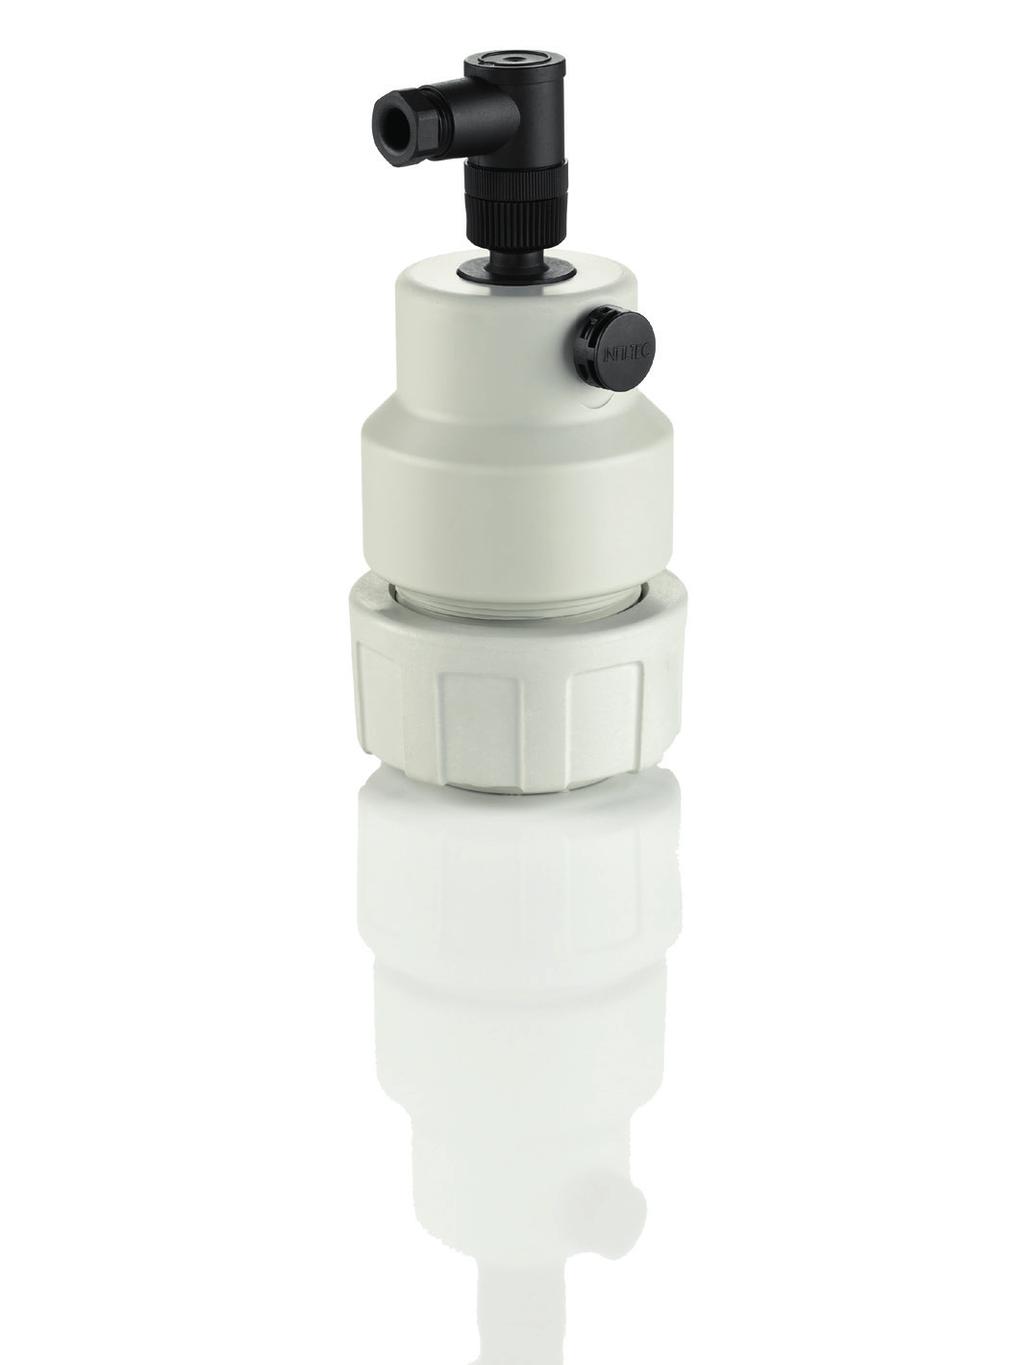 Sensor de nvel hdrostátco HFT C Compact /Flex (sensor suspenddo) Rango de medcón 0 5 m columna de agua 0 0 m columna de agua Almentacón de tensón de 9 5 V DC PVC-U PP PVDF Propedades Determnacón del